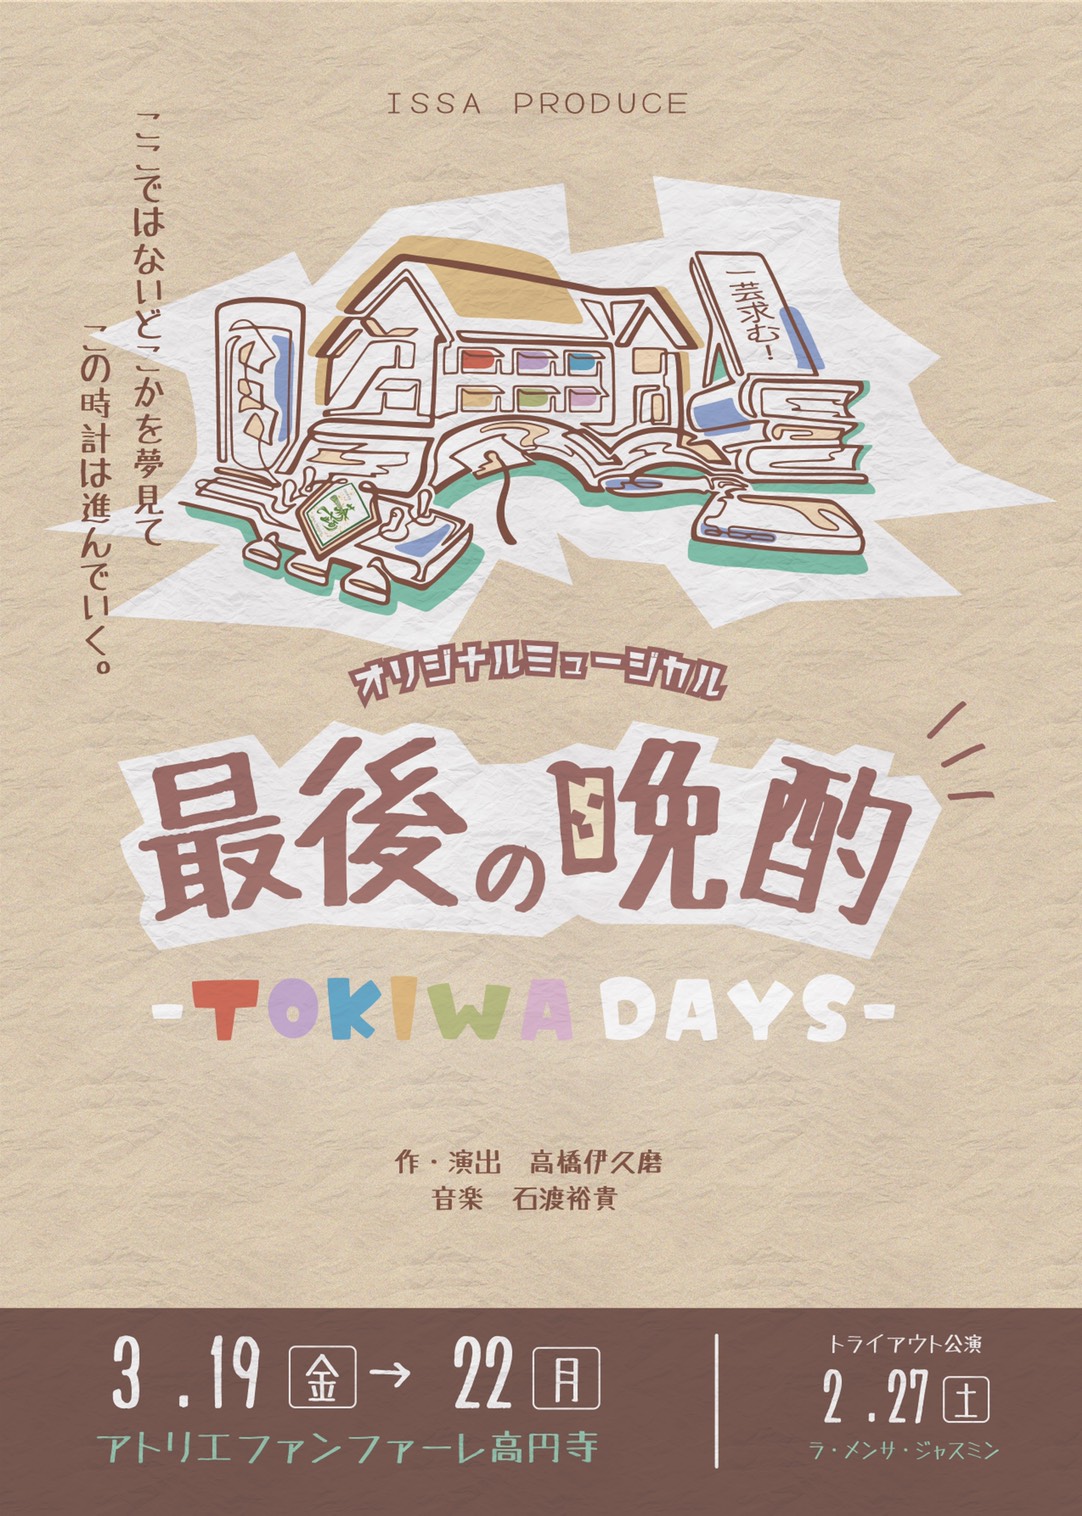 【来場】『最後の晩酌-TOKIWA DAYS-』